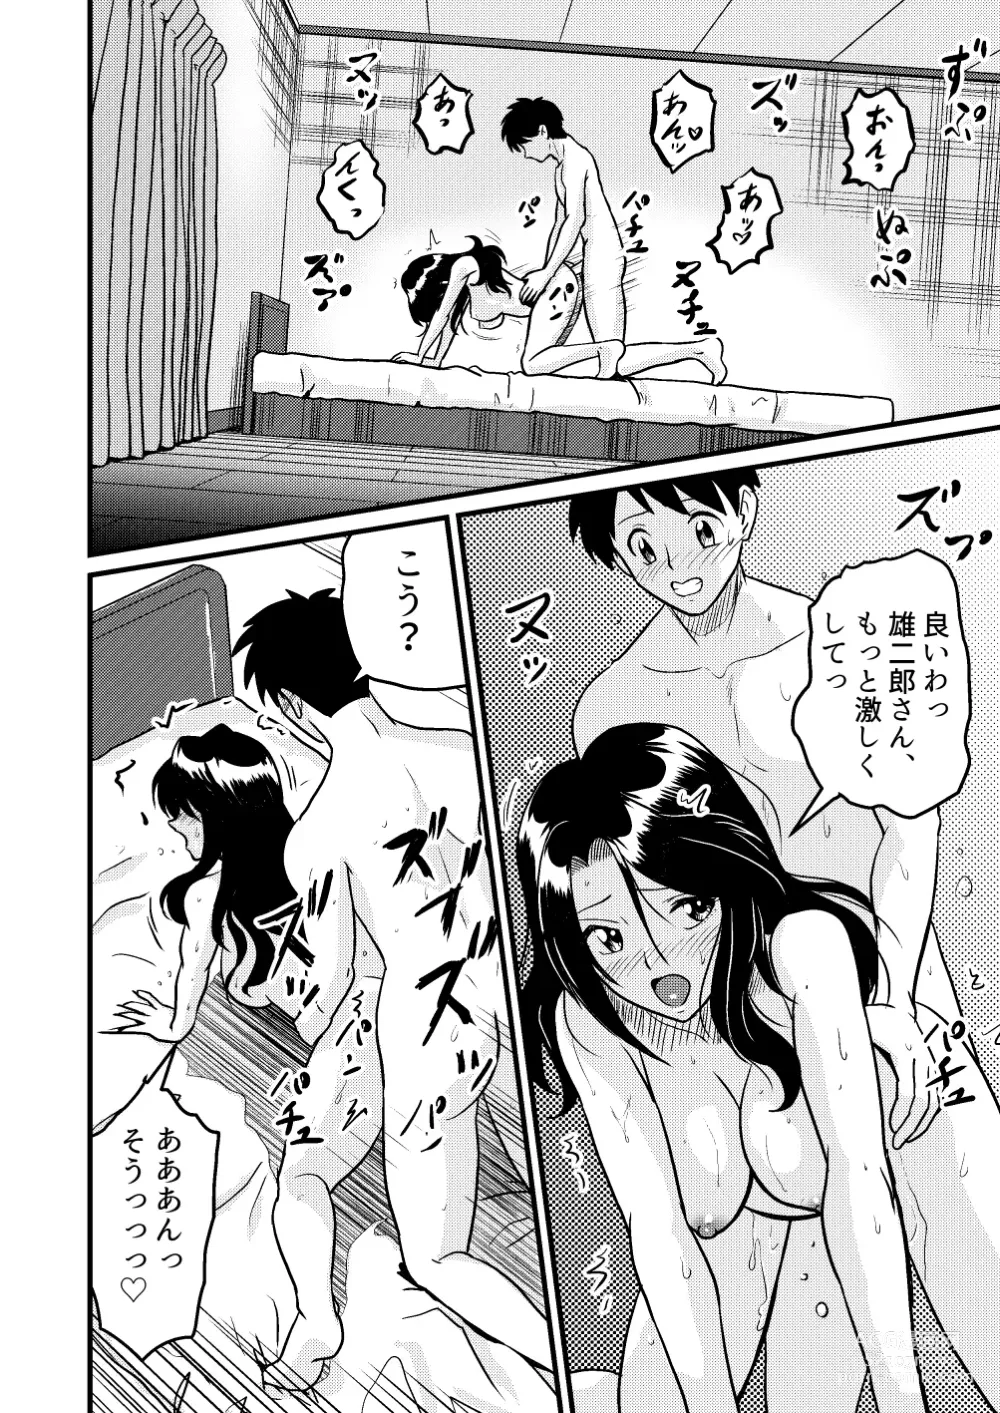 Page 6 of doujinshi Shin Kazoku 2 Ima wa Sensei nante Yobanaide...